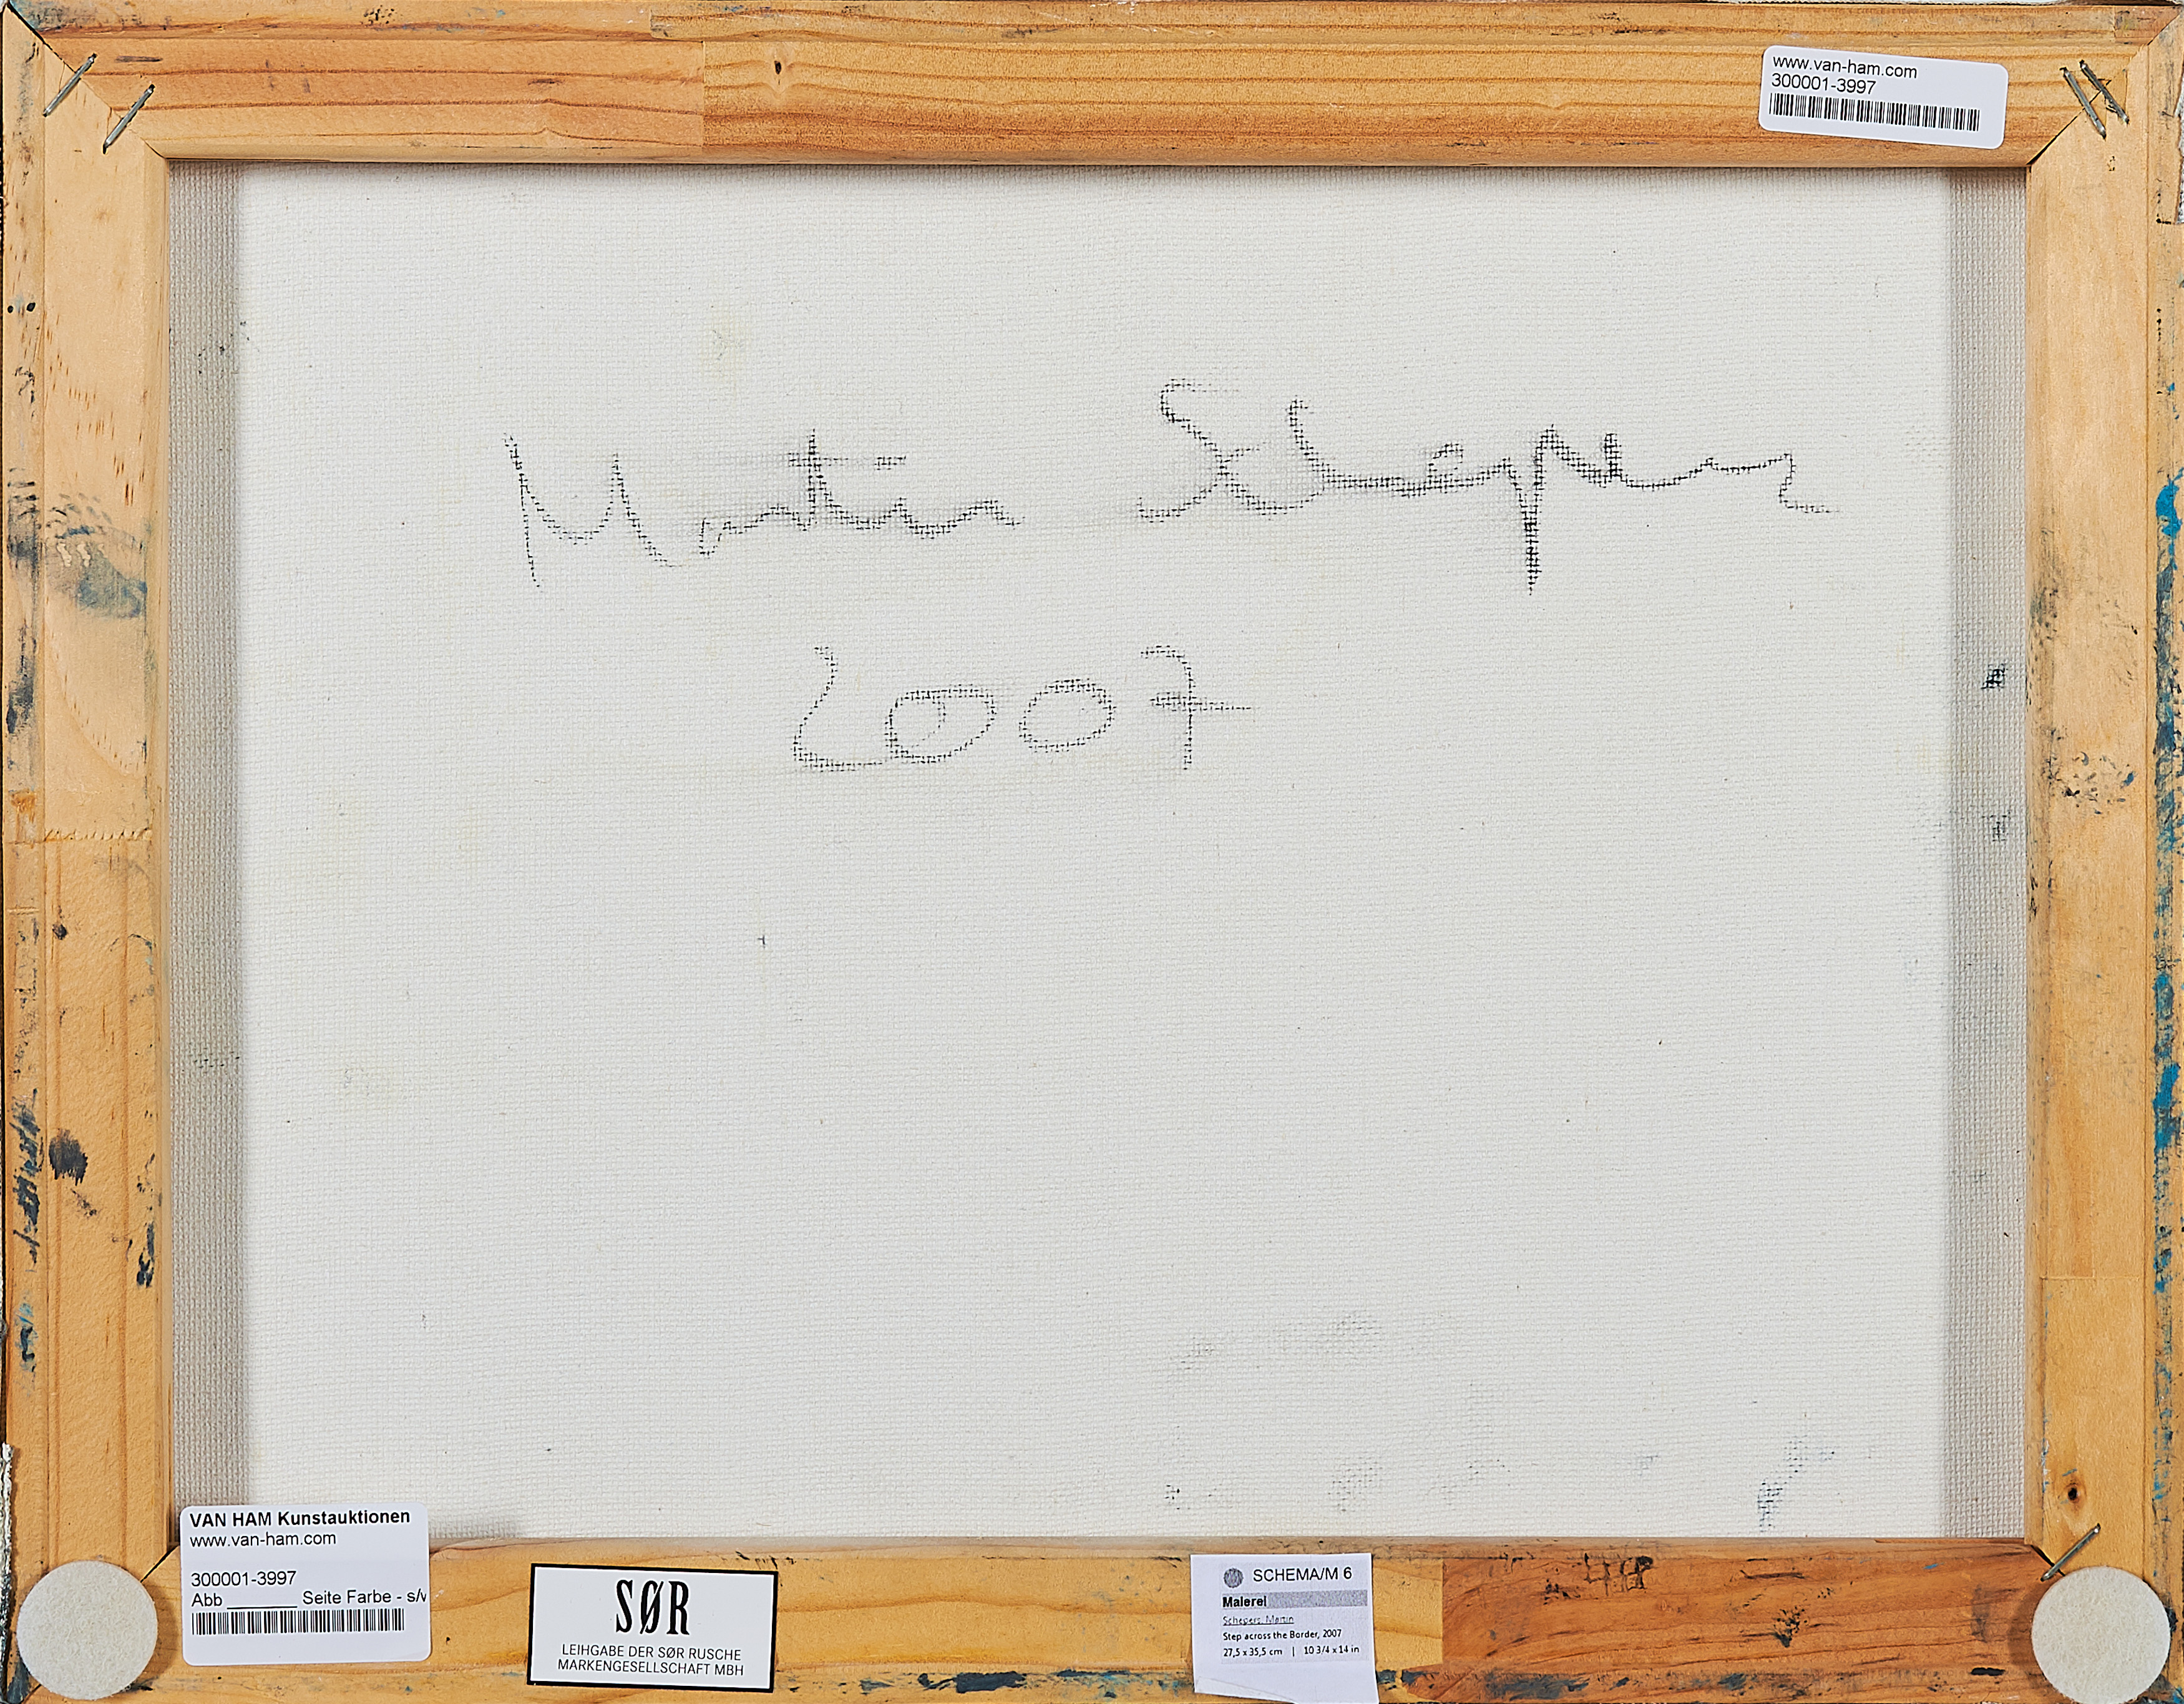 Martin Schepers - Step across the Border, 300001-3997, Van Ham Kunstauktionen